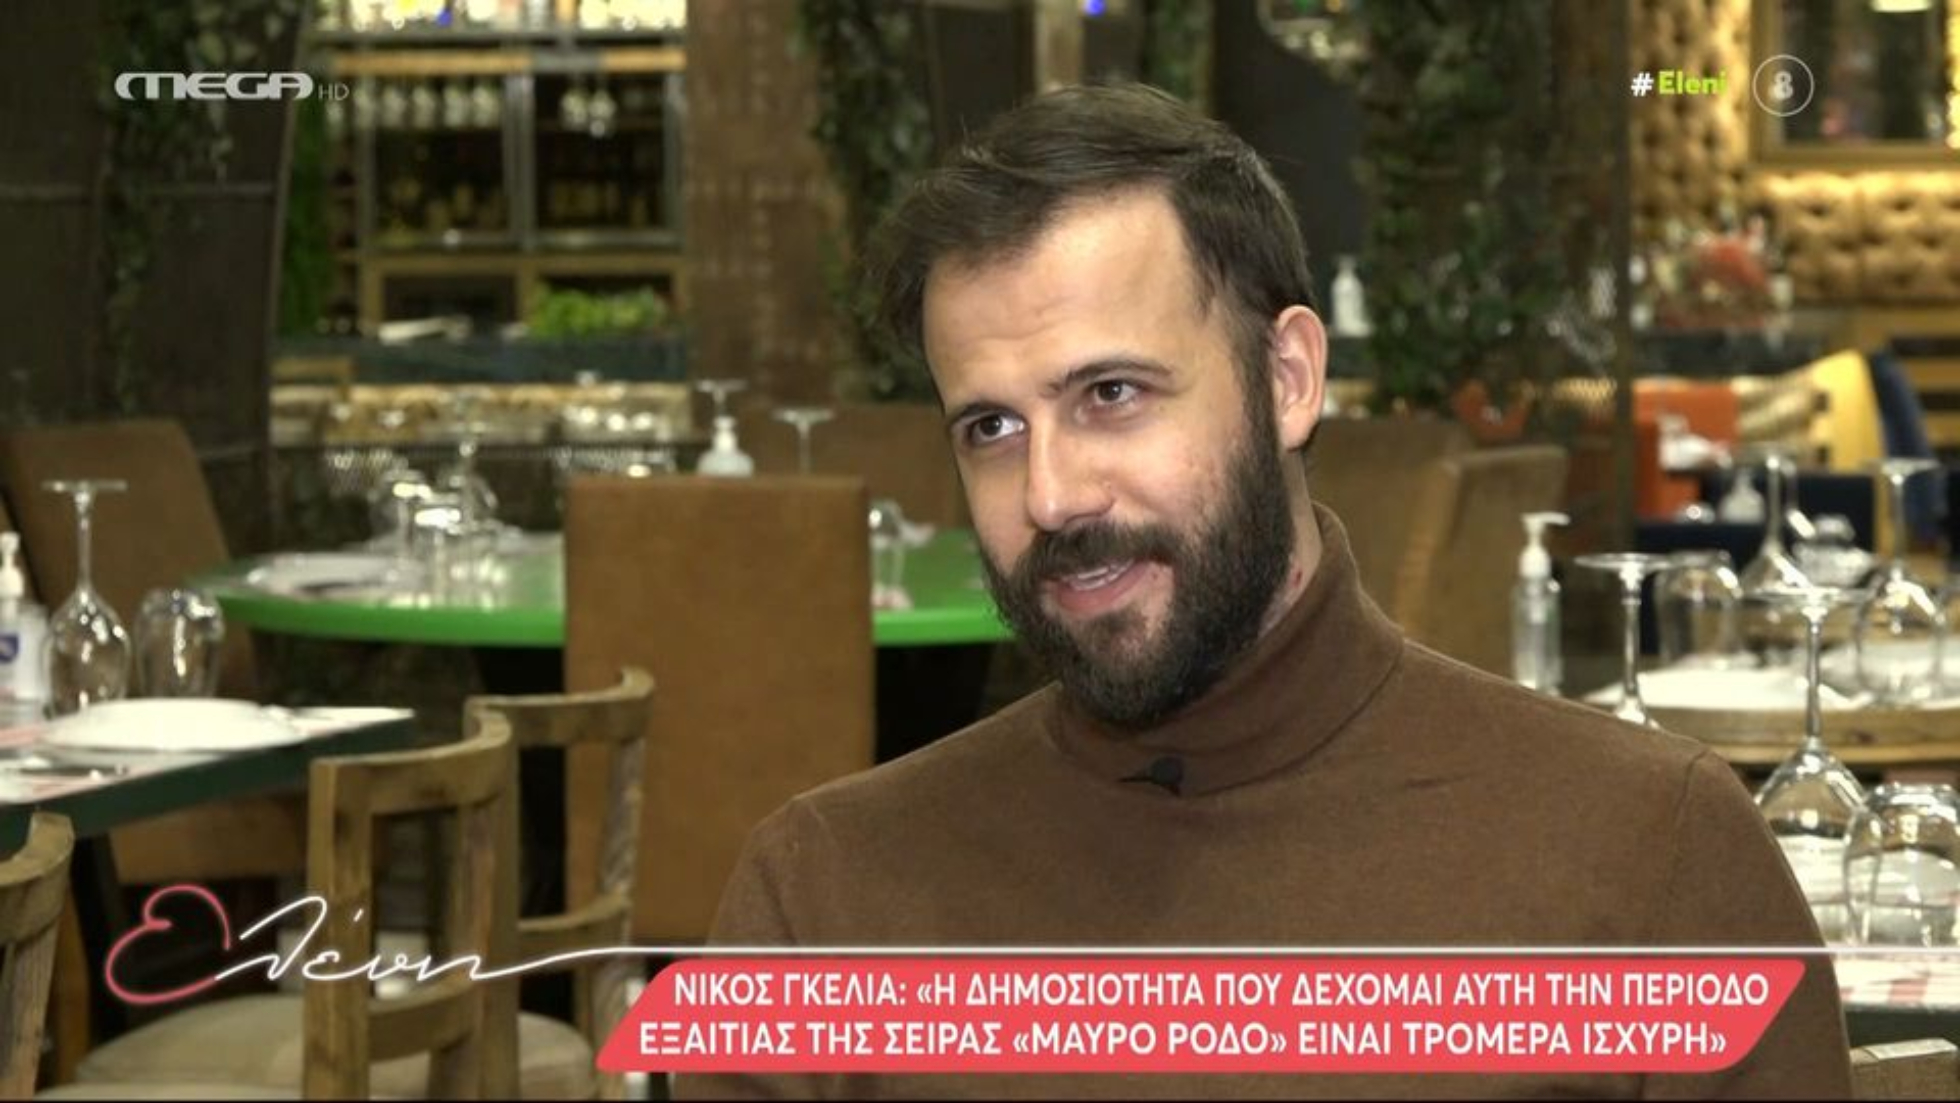 Νίκος Γκέλια: Μιλάω ανοιχτά για τον ρατσισμό που έχω βιώσει λόγω της αλβανικής καταγωγής μου